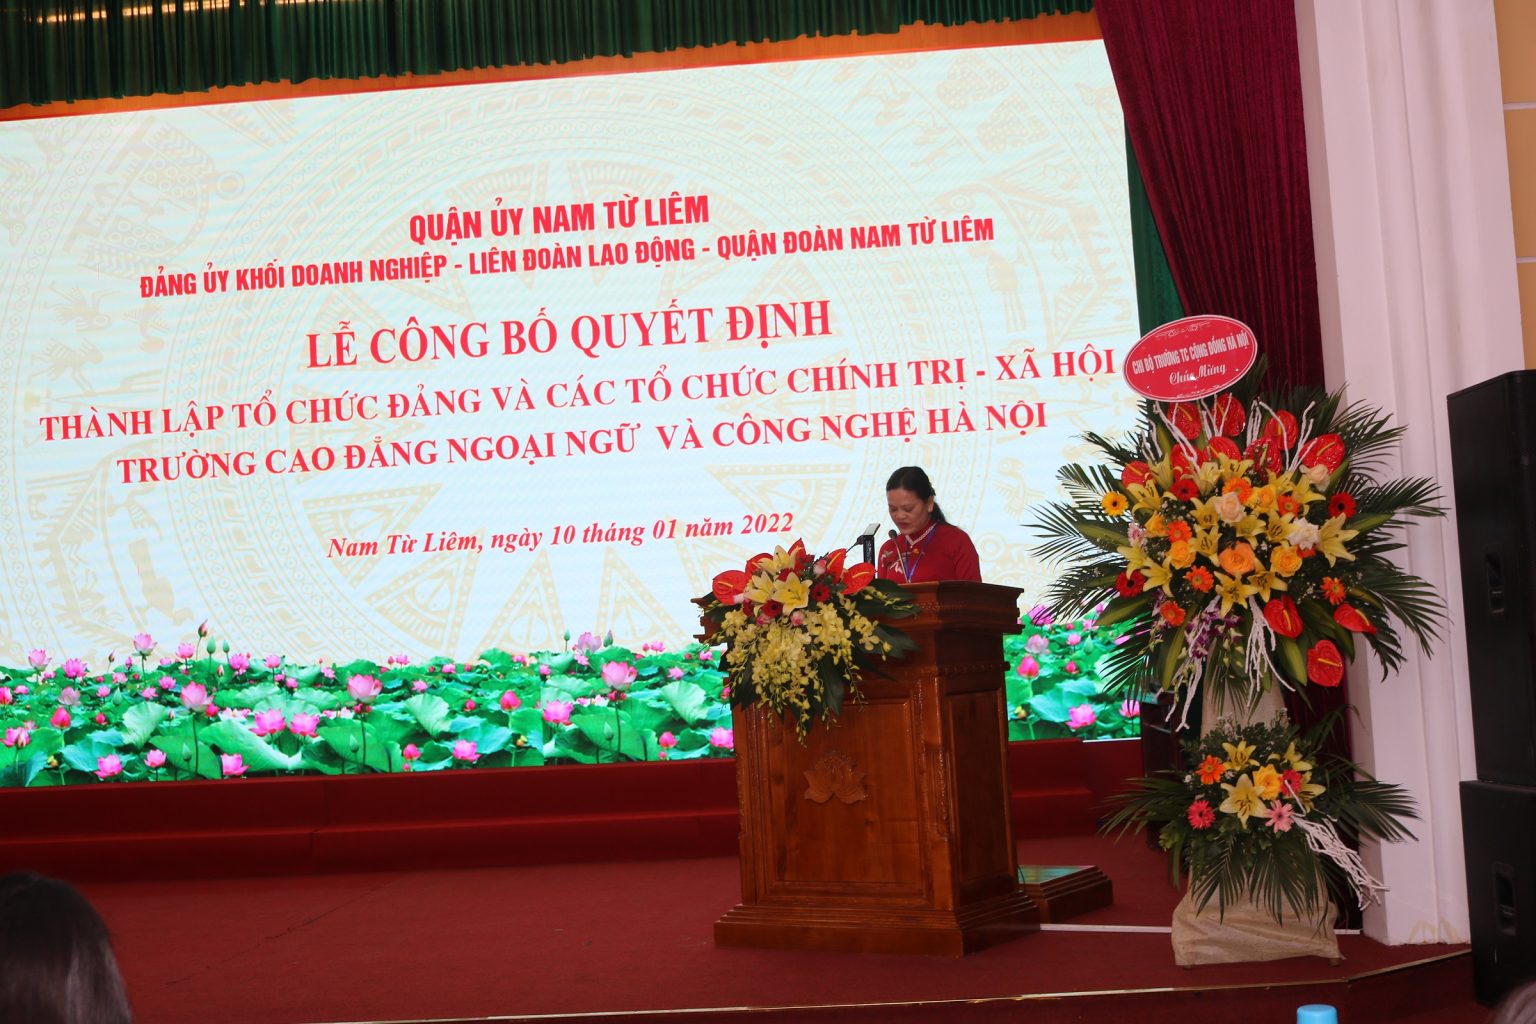 Đồng chí Nguyễn Thu Hương – Phó Bí thư Đảng ủy Khối doanh nghiệp đã công bố các Quyết định thành lập